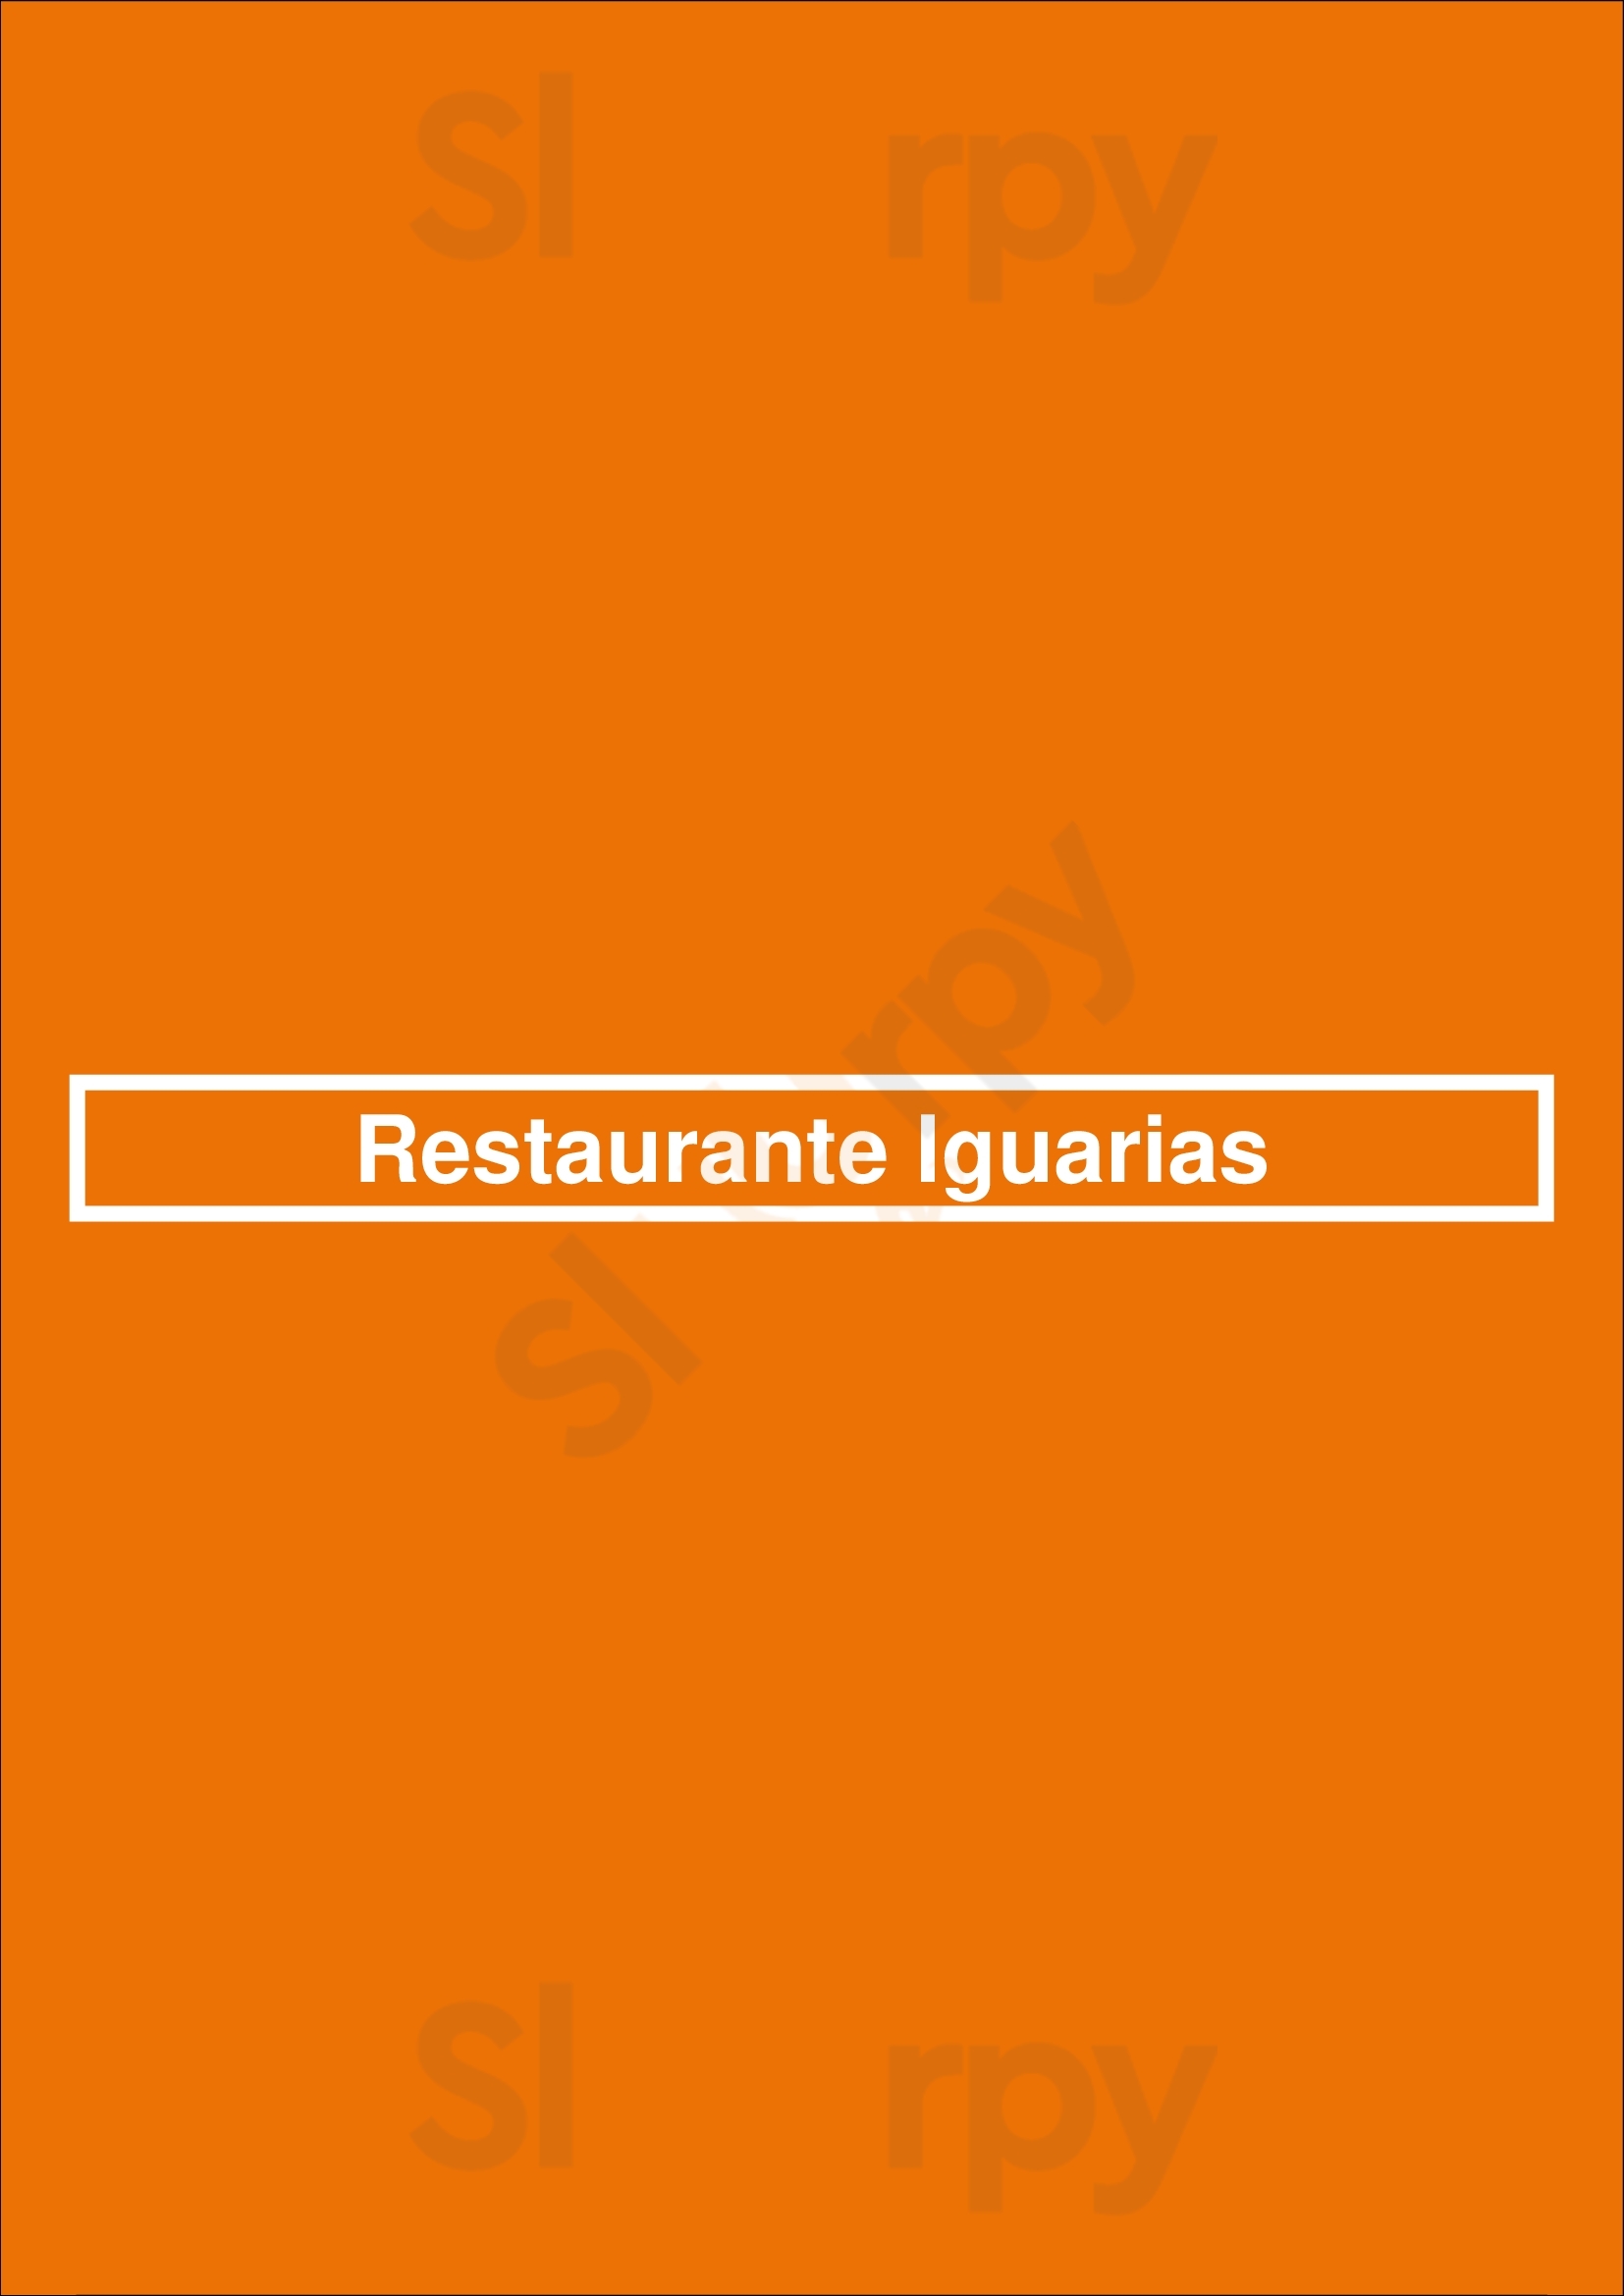 Restaurante Iguarias Aveiro Menu - 1